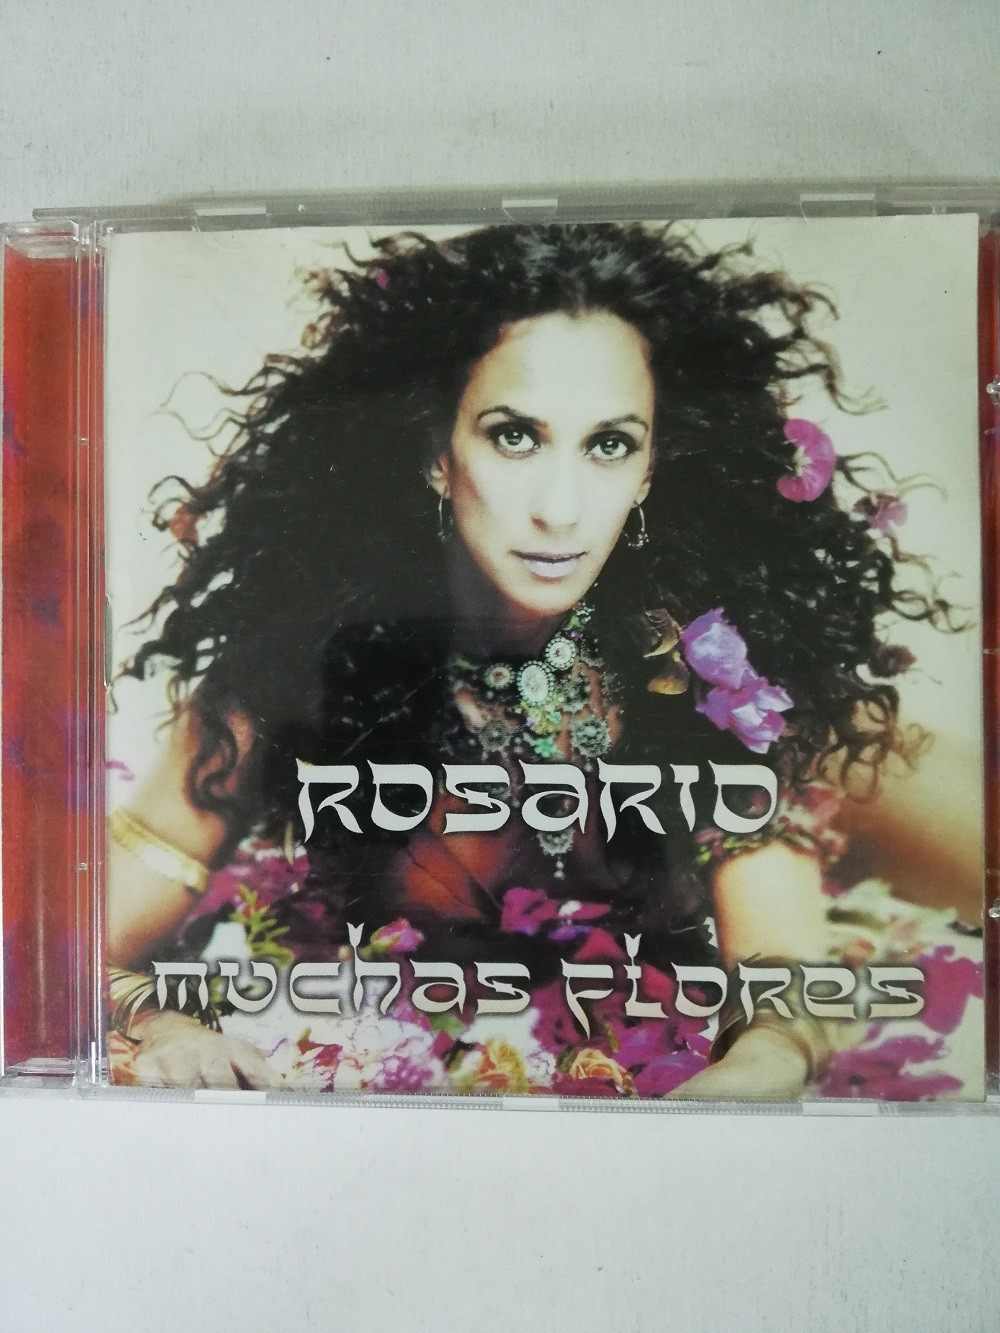 Imagen CD ROSARIO - MUCHAS FLORES